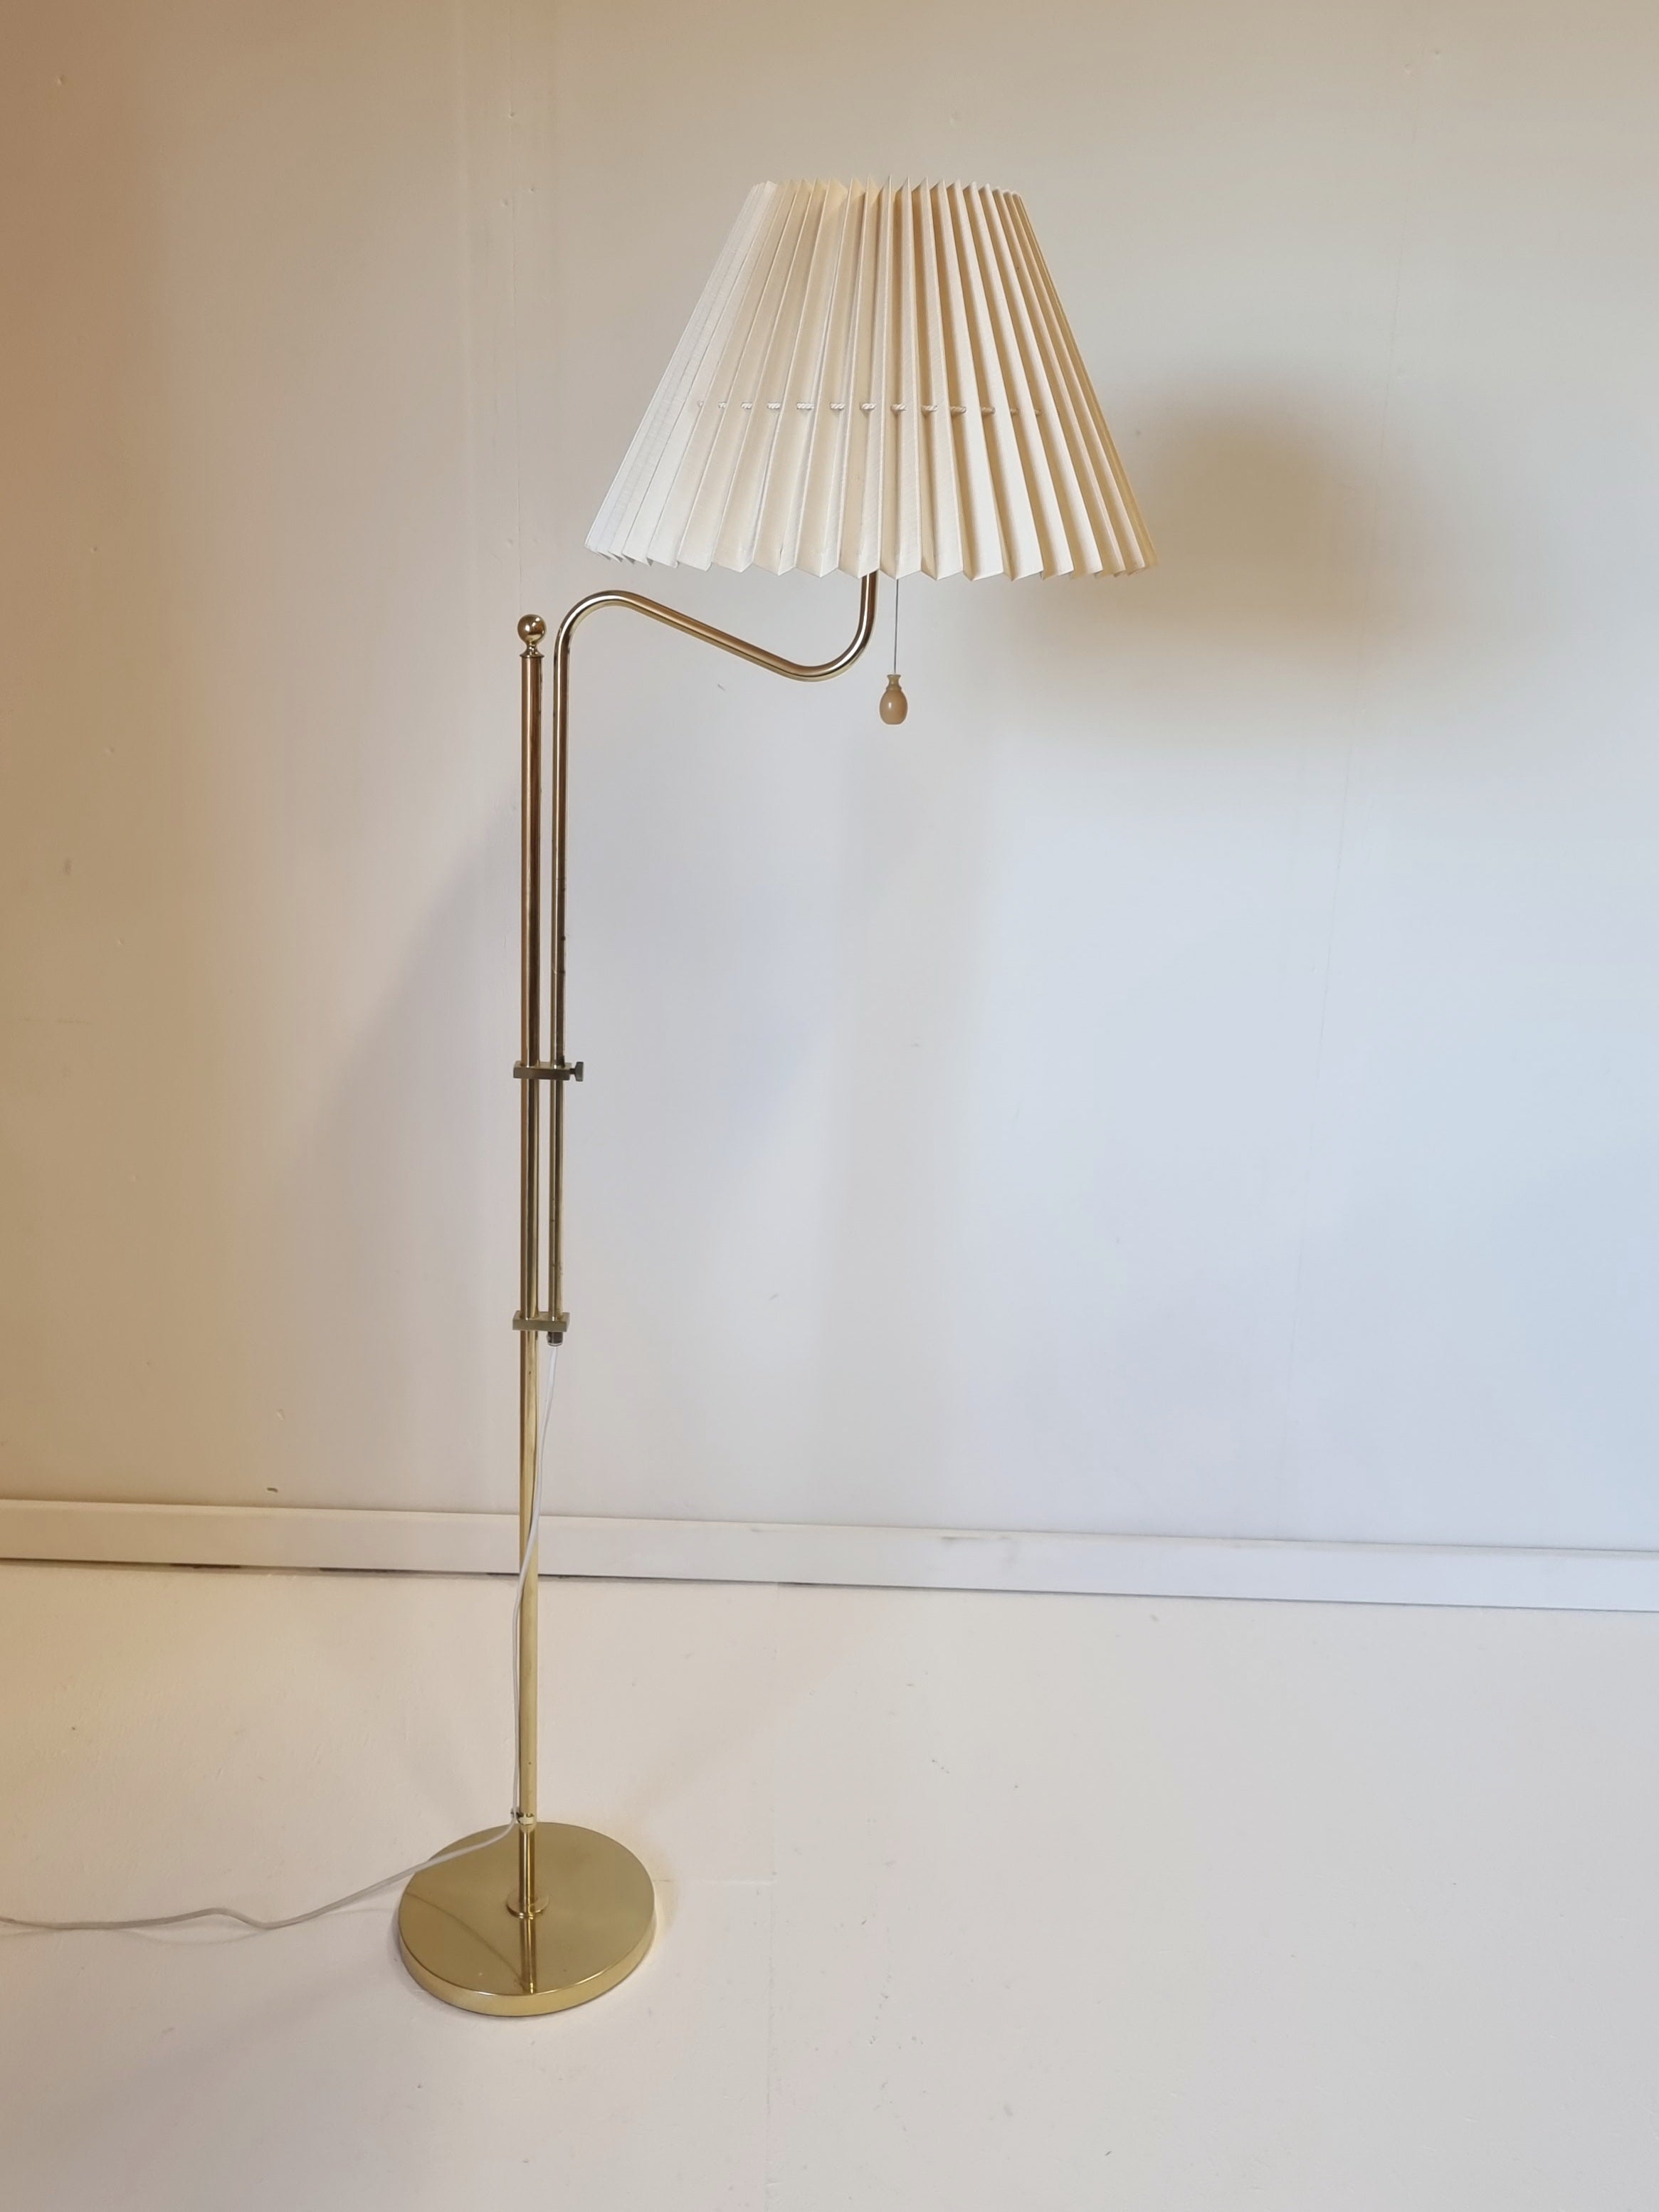 Bergboms, Verstellbare Stehlampe G-132 aus Messing, Skandinavisch / Midcentury Modern